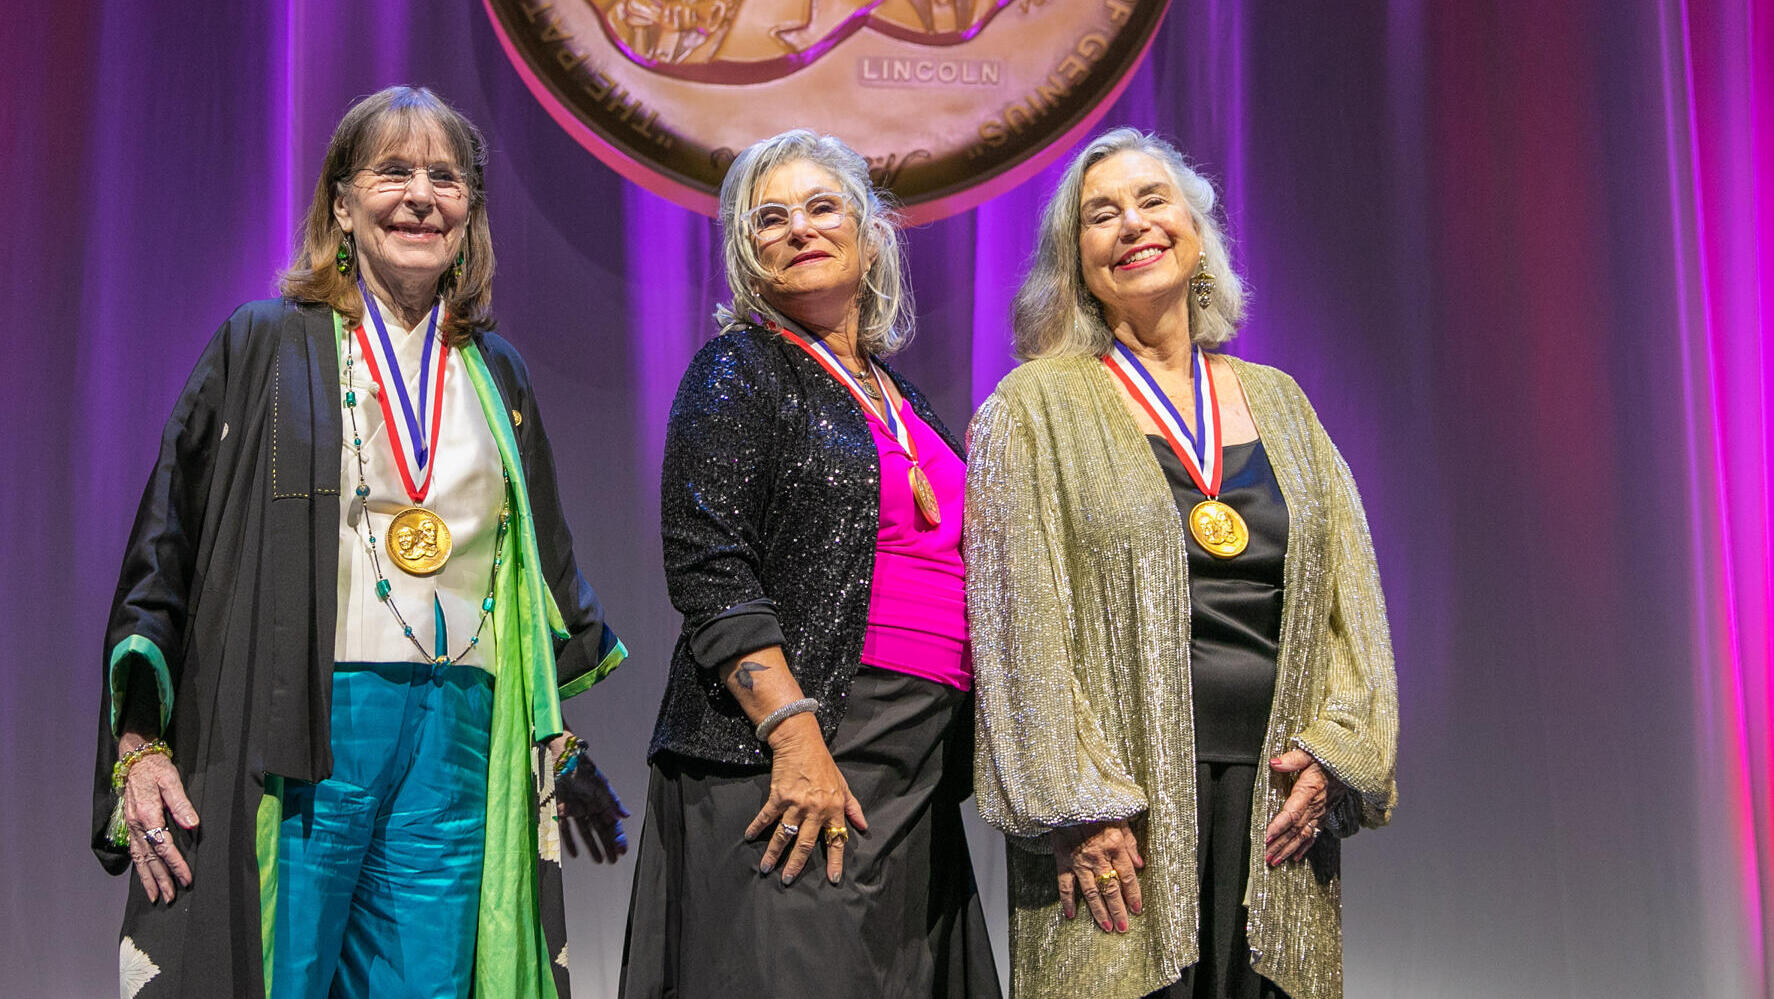 פנאי ליסה לינדהול, הינדה מילר ופולי סמית עונדות את המדליה בטקס בהיכל הממציאים